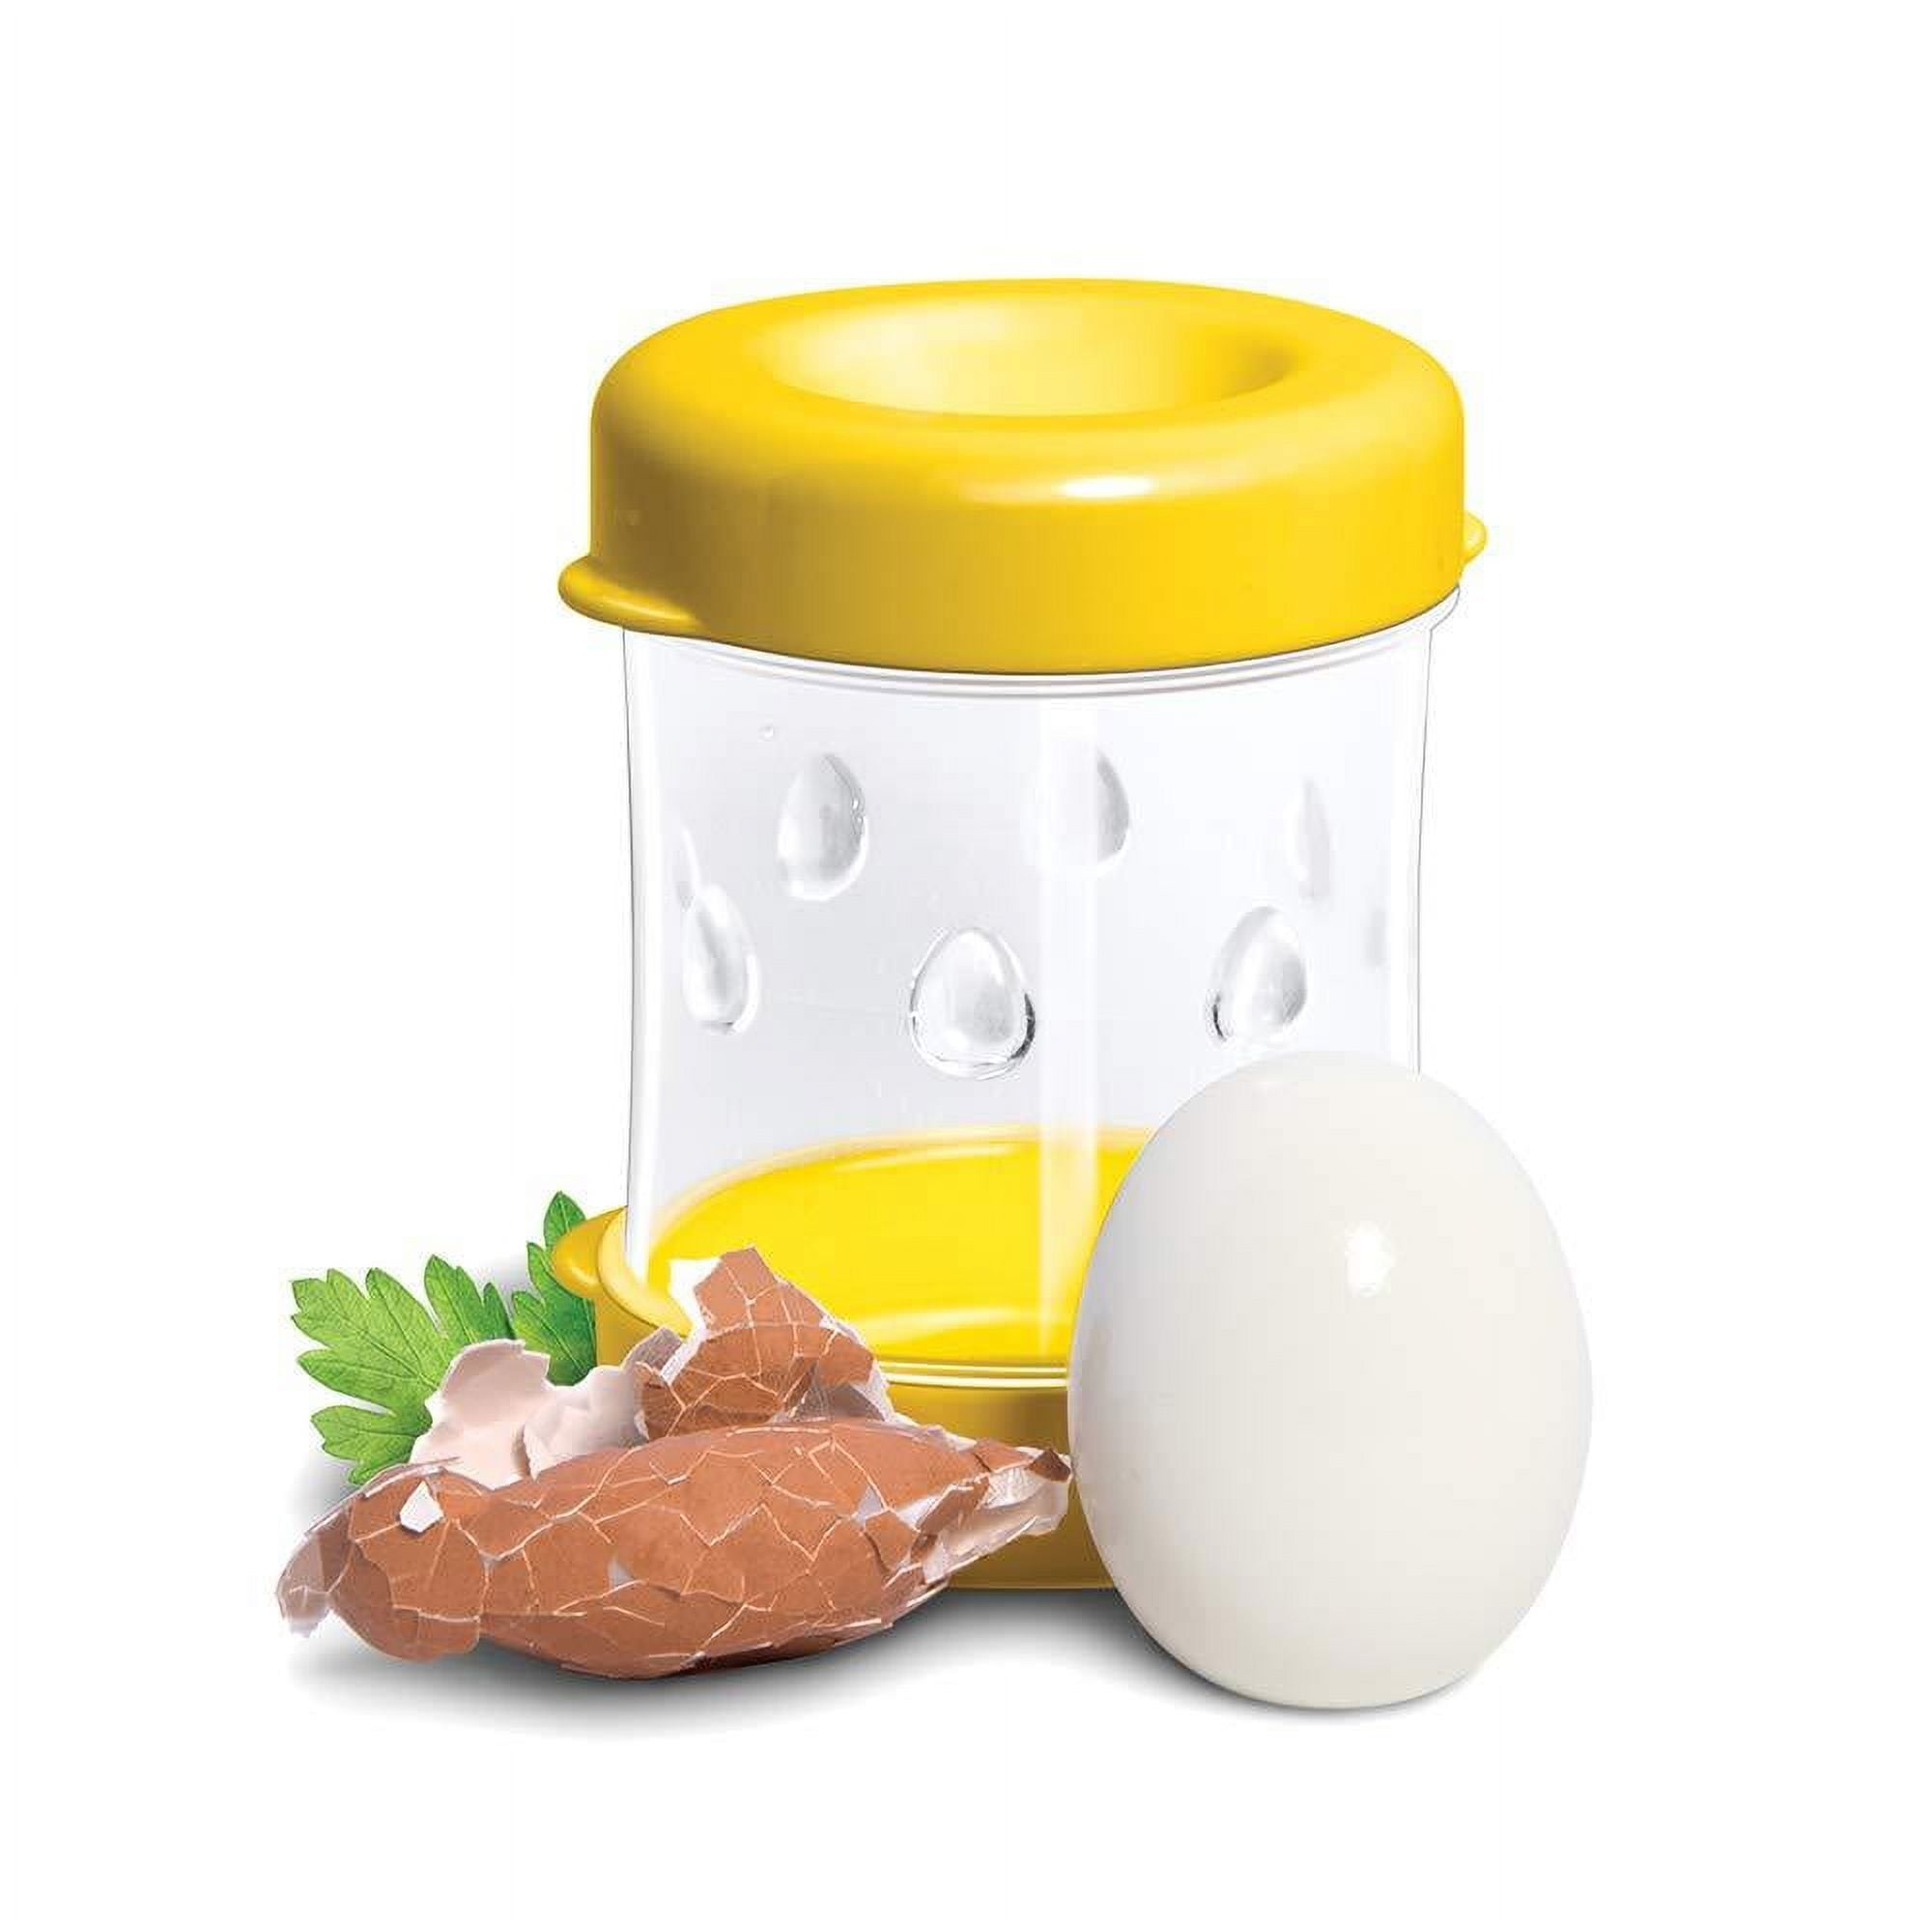 The NEGG Boiled Egg Peeler 